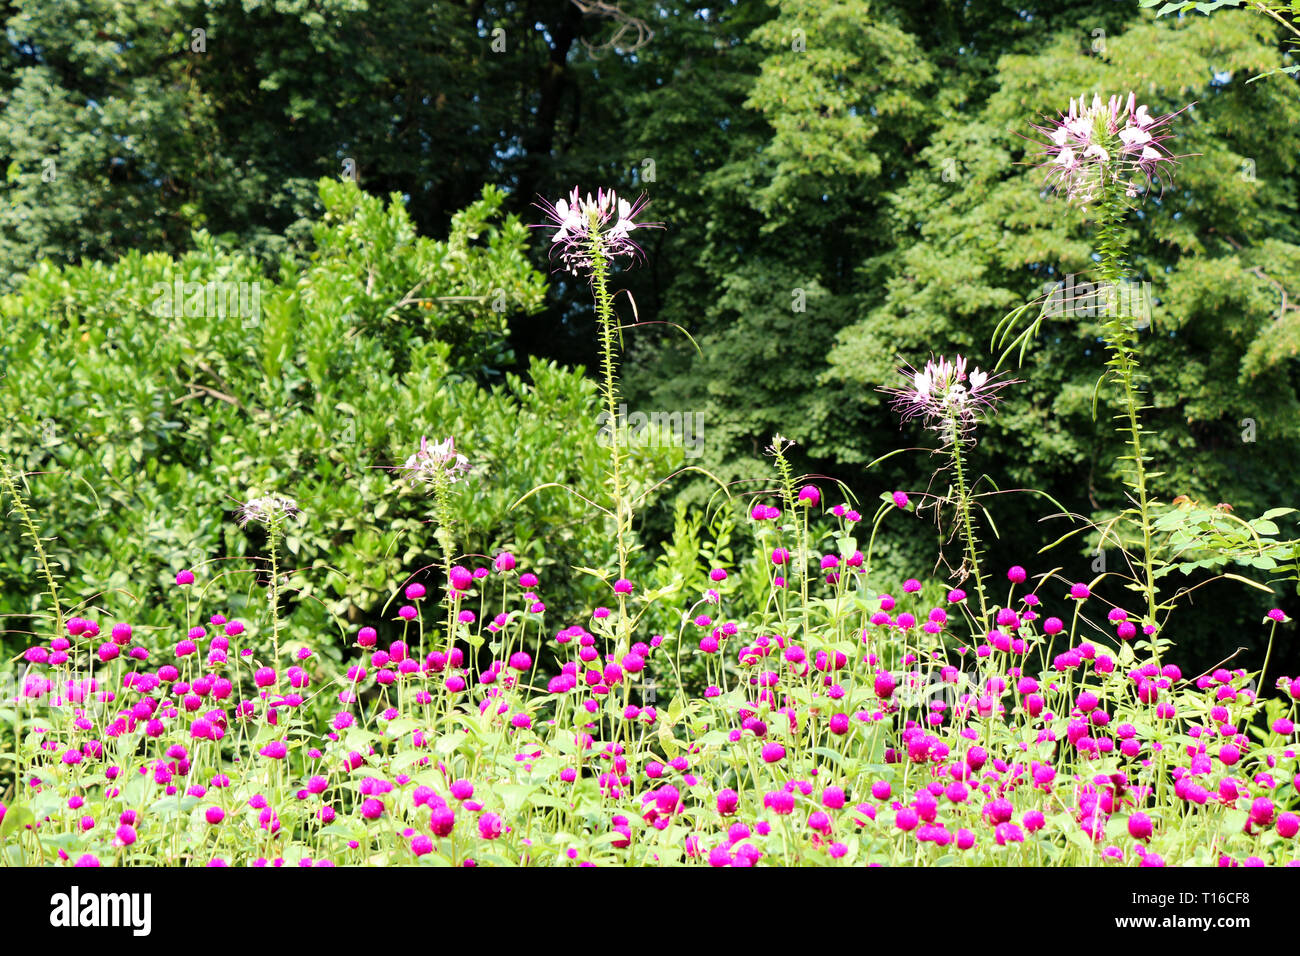 Beautifu lGlobe amaranths,  Amaranthaceae flowers in nature background Stock Photo